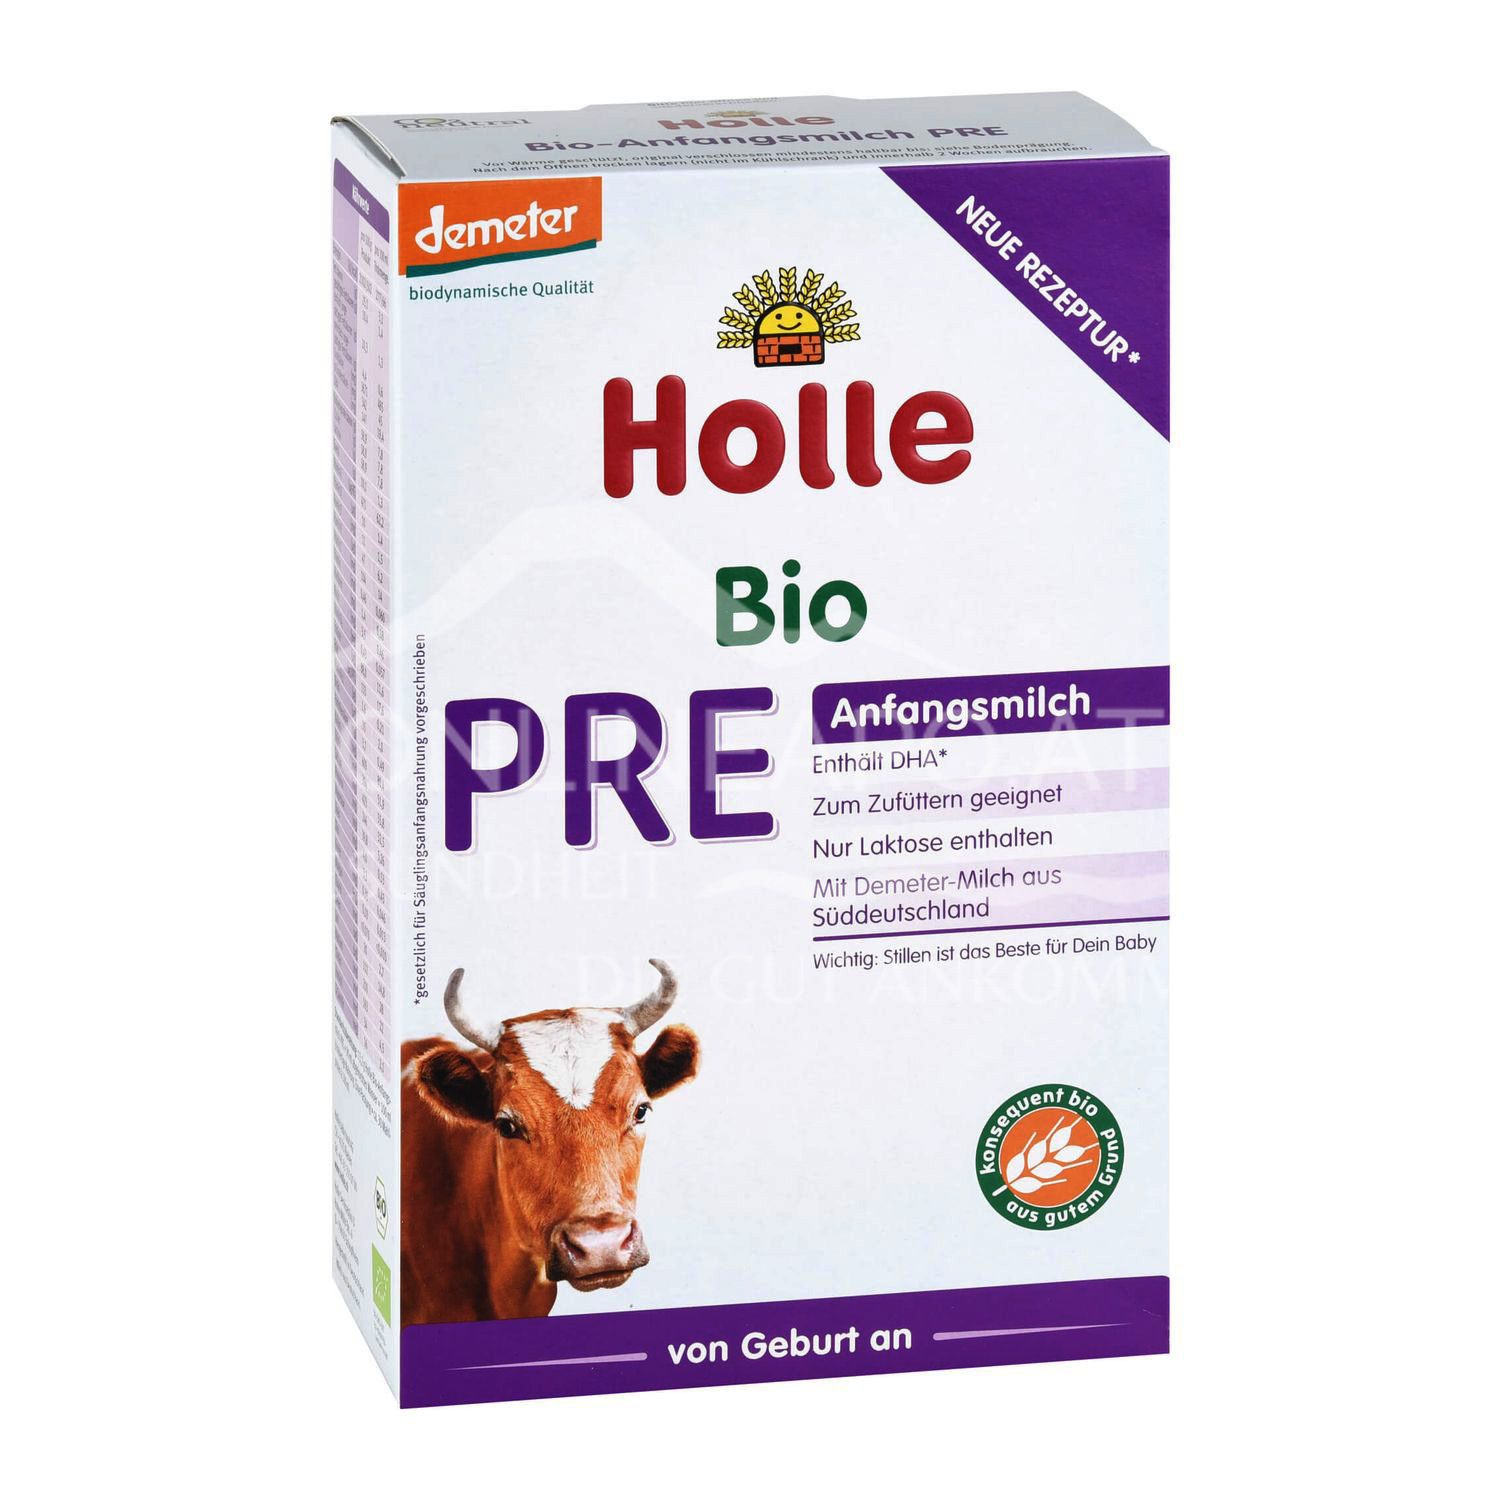 Holle Bio-Anfangsmilch PRE Pulver